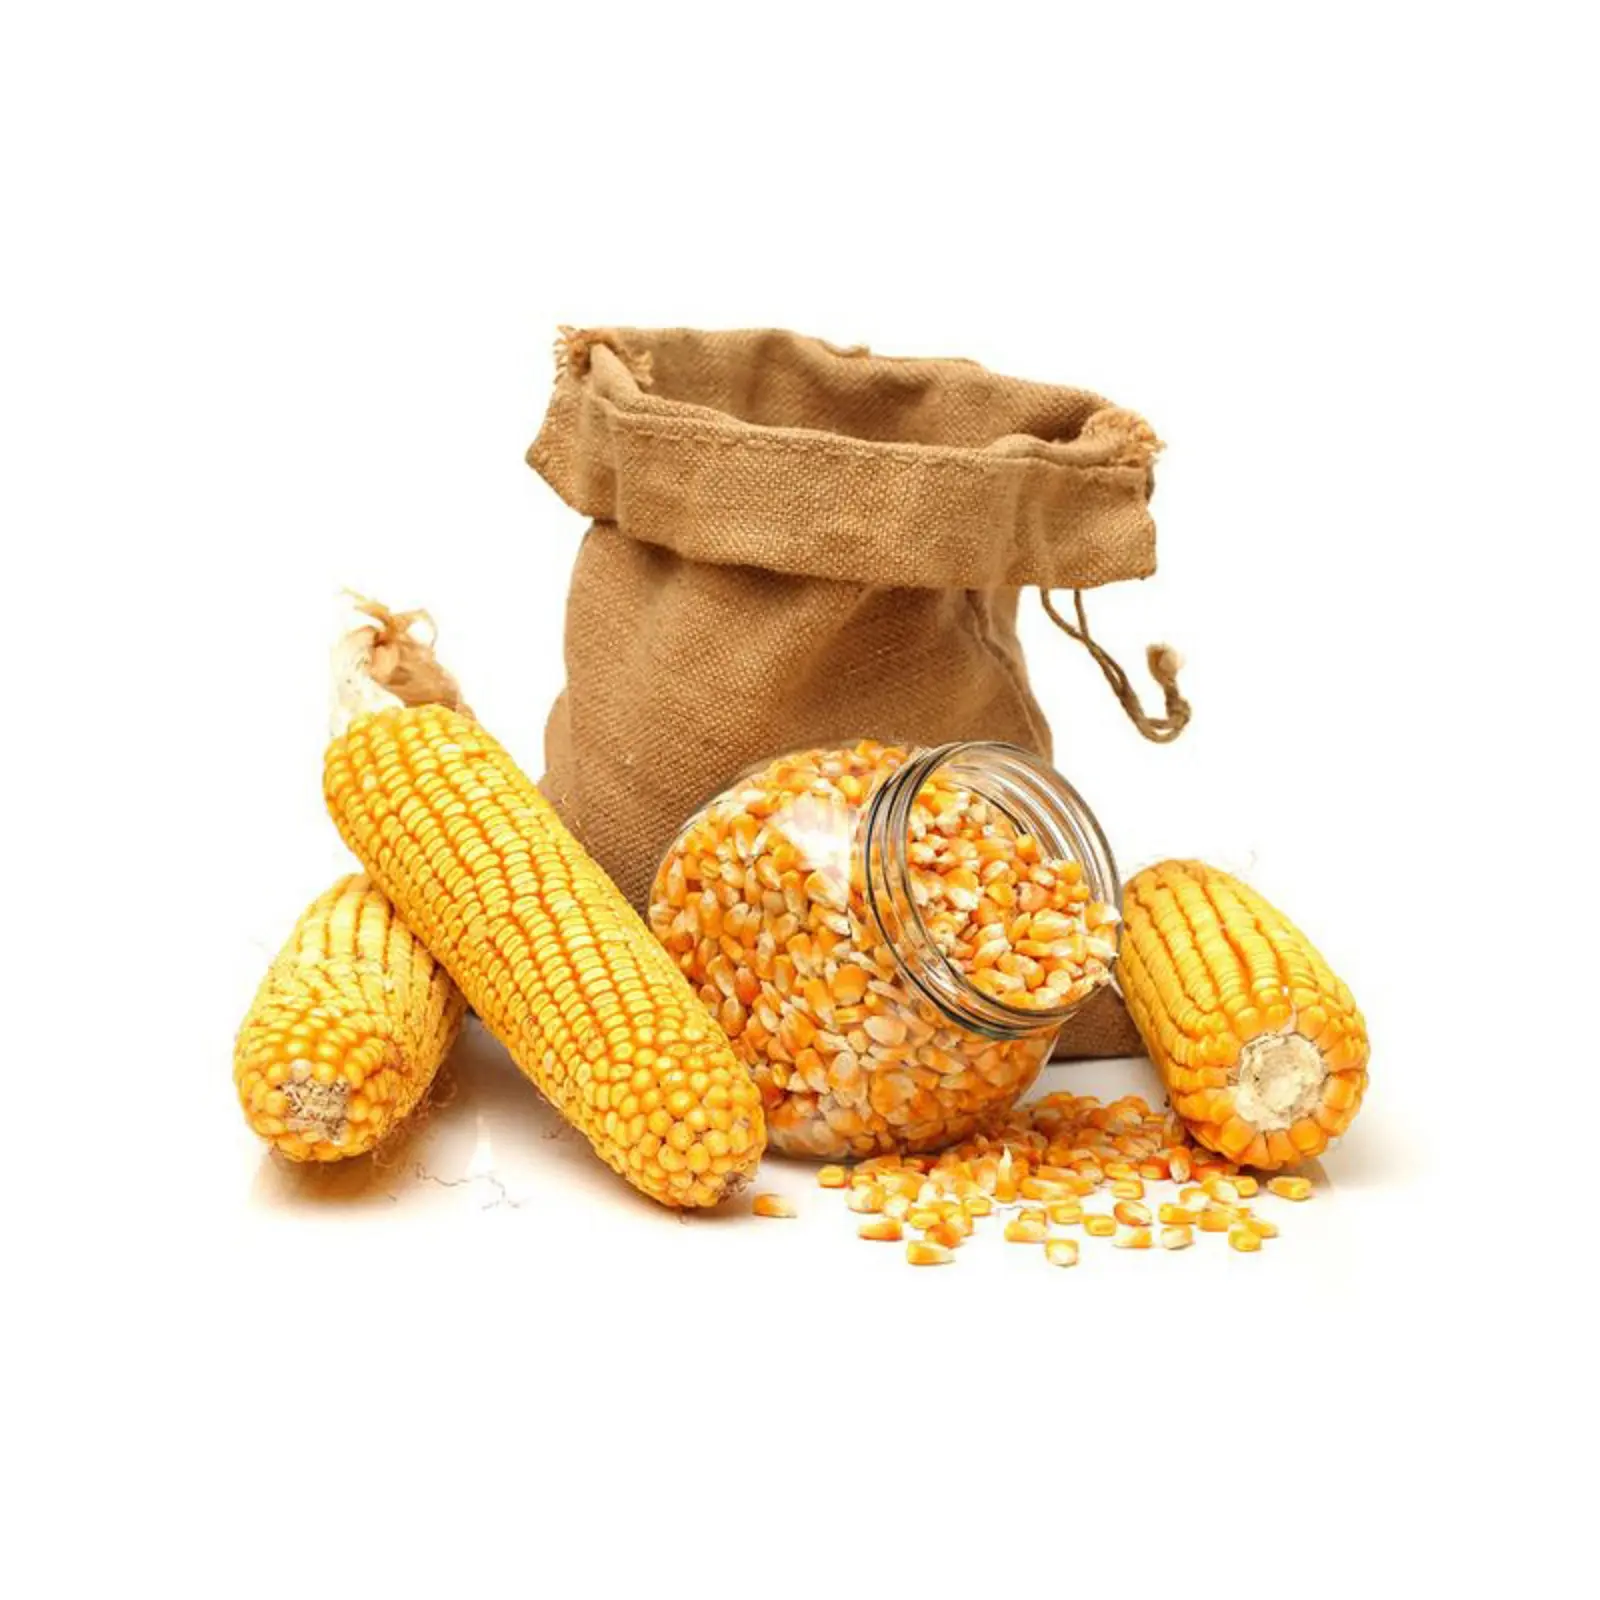 Maíz de maíz blanco mejor proveedor/Maíz orgánico proveedores/Maíz amarillo para consumo humano y animal